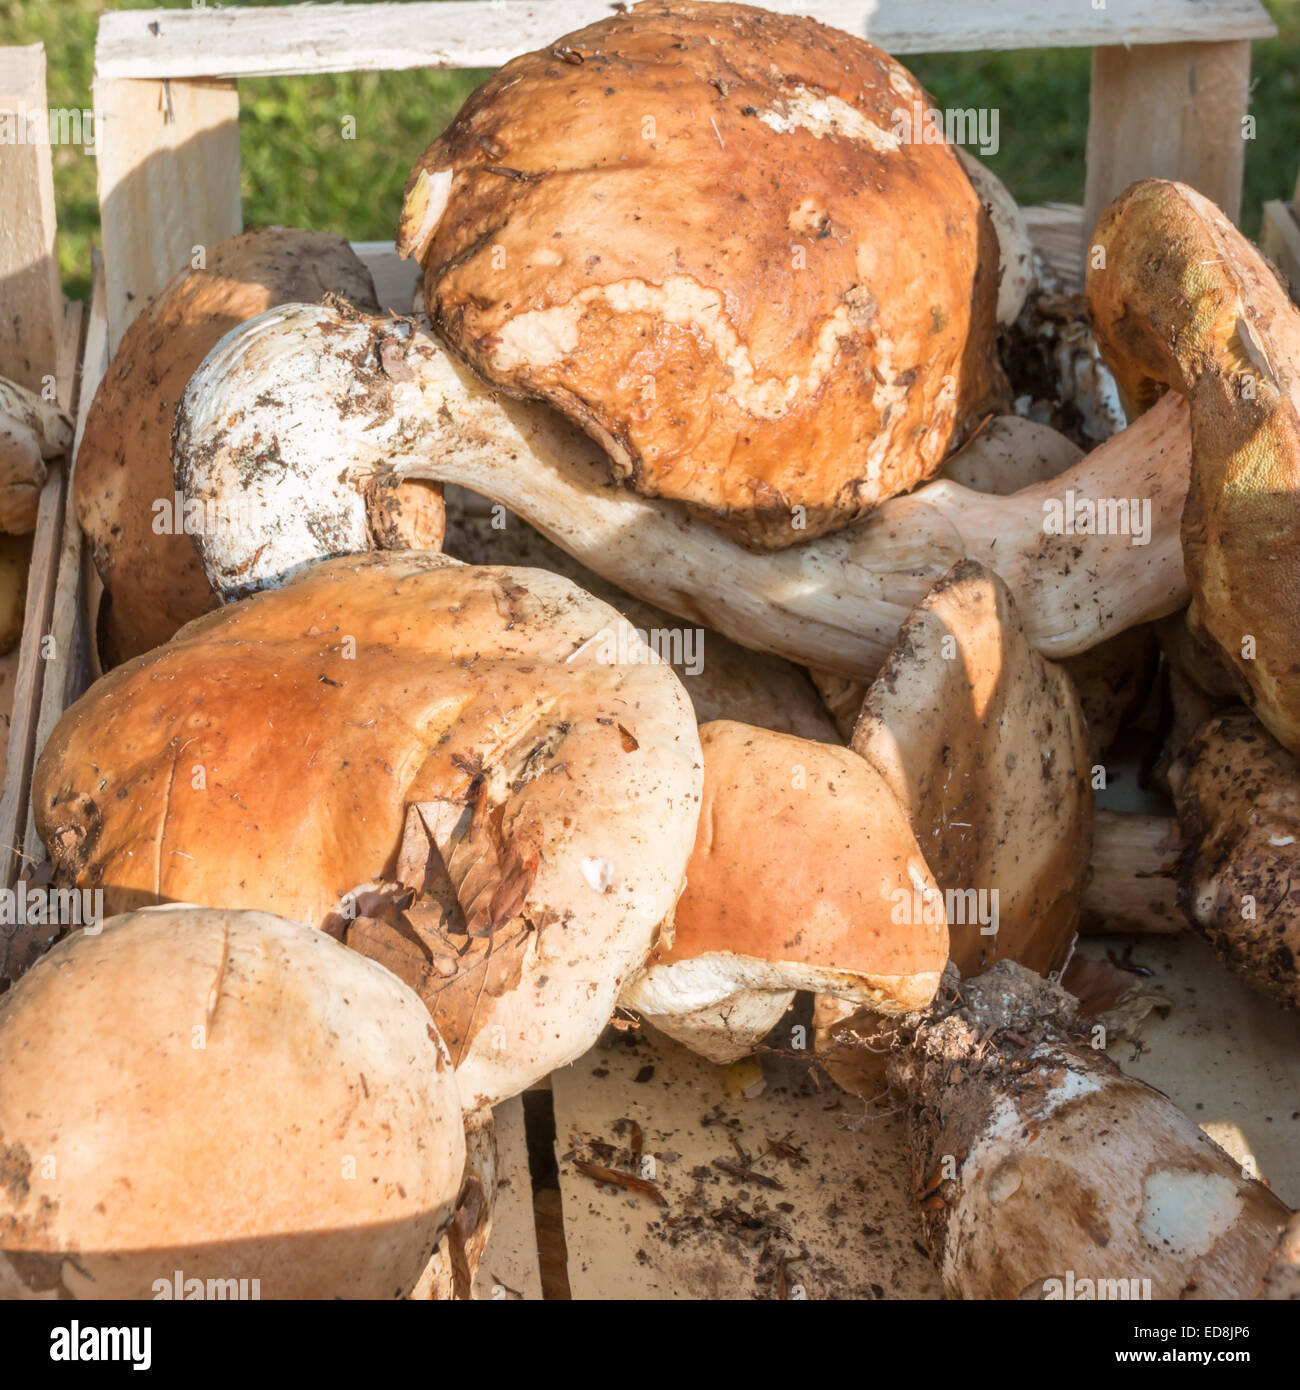 porcini mushrooms fresh harvest in wodden bowl Stock Photo